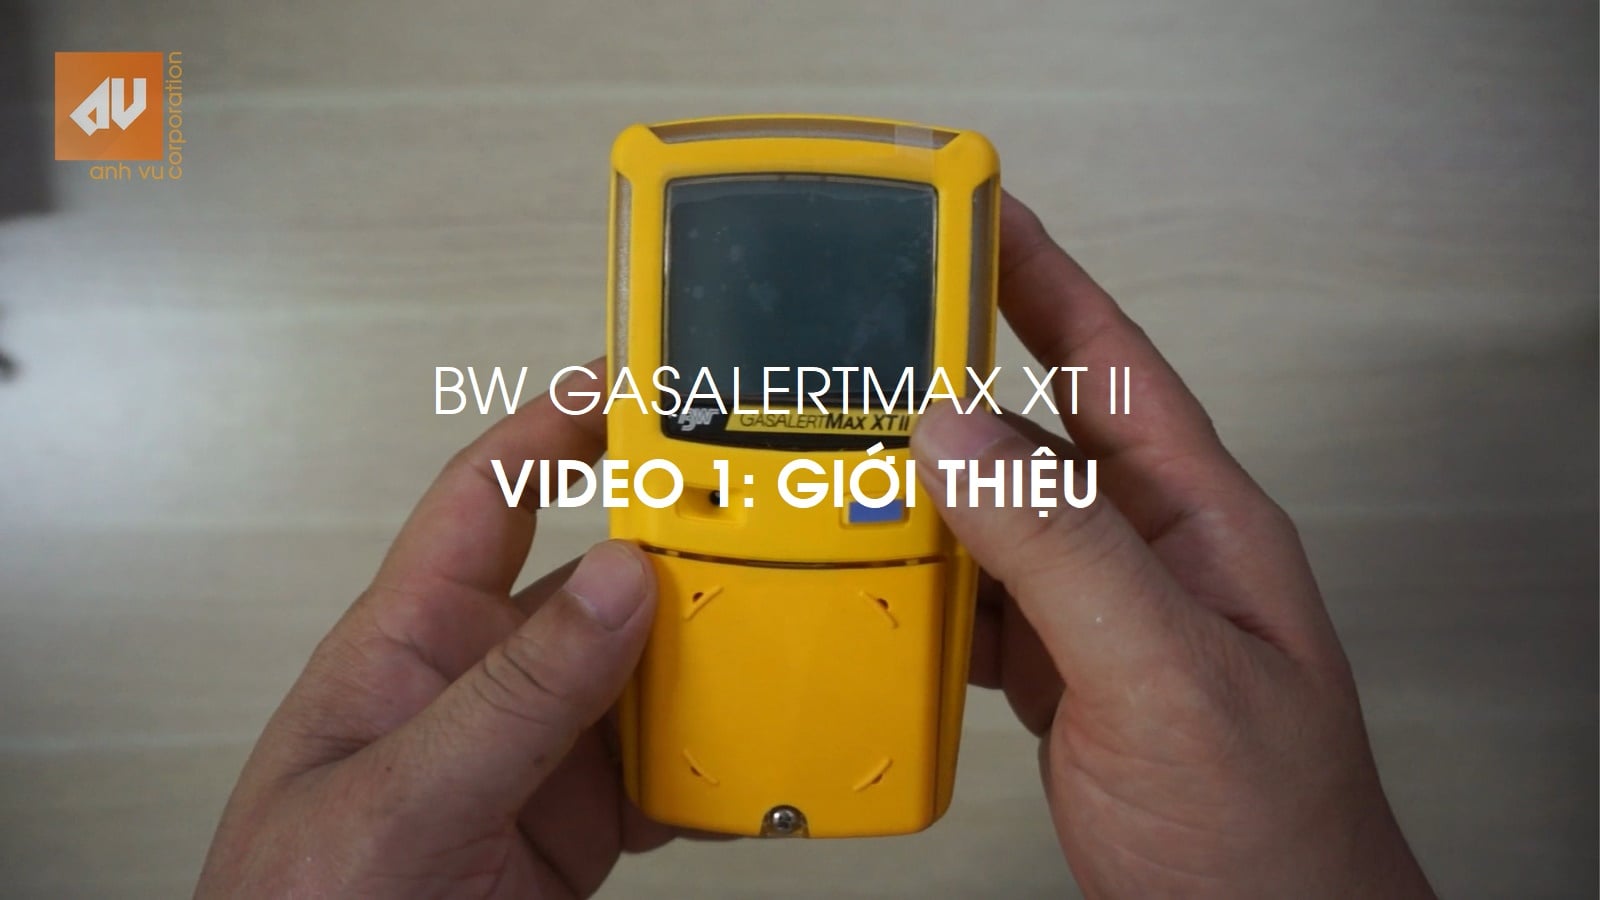 Hướng dẫn sử dụng máy đo khí GasAlertMax XT II – Tiếng Việt